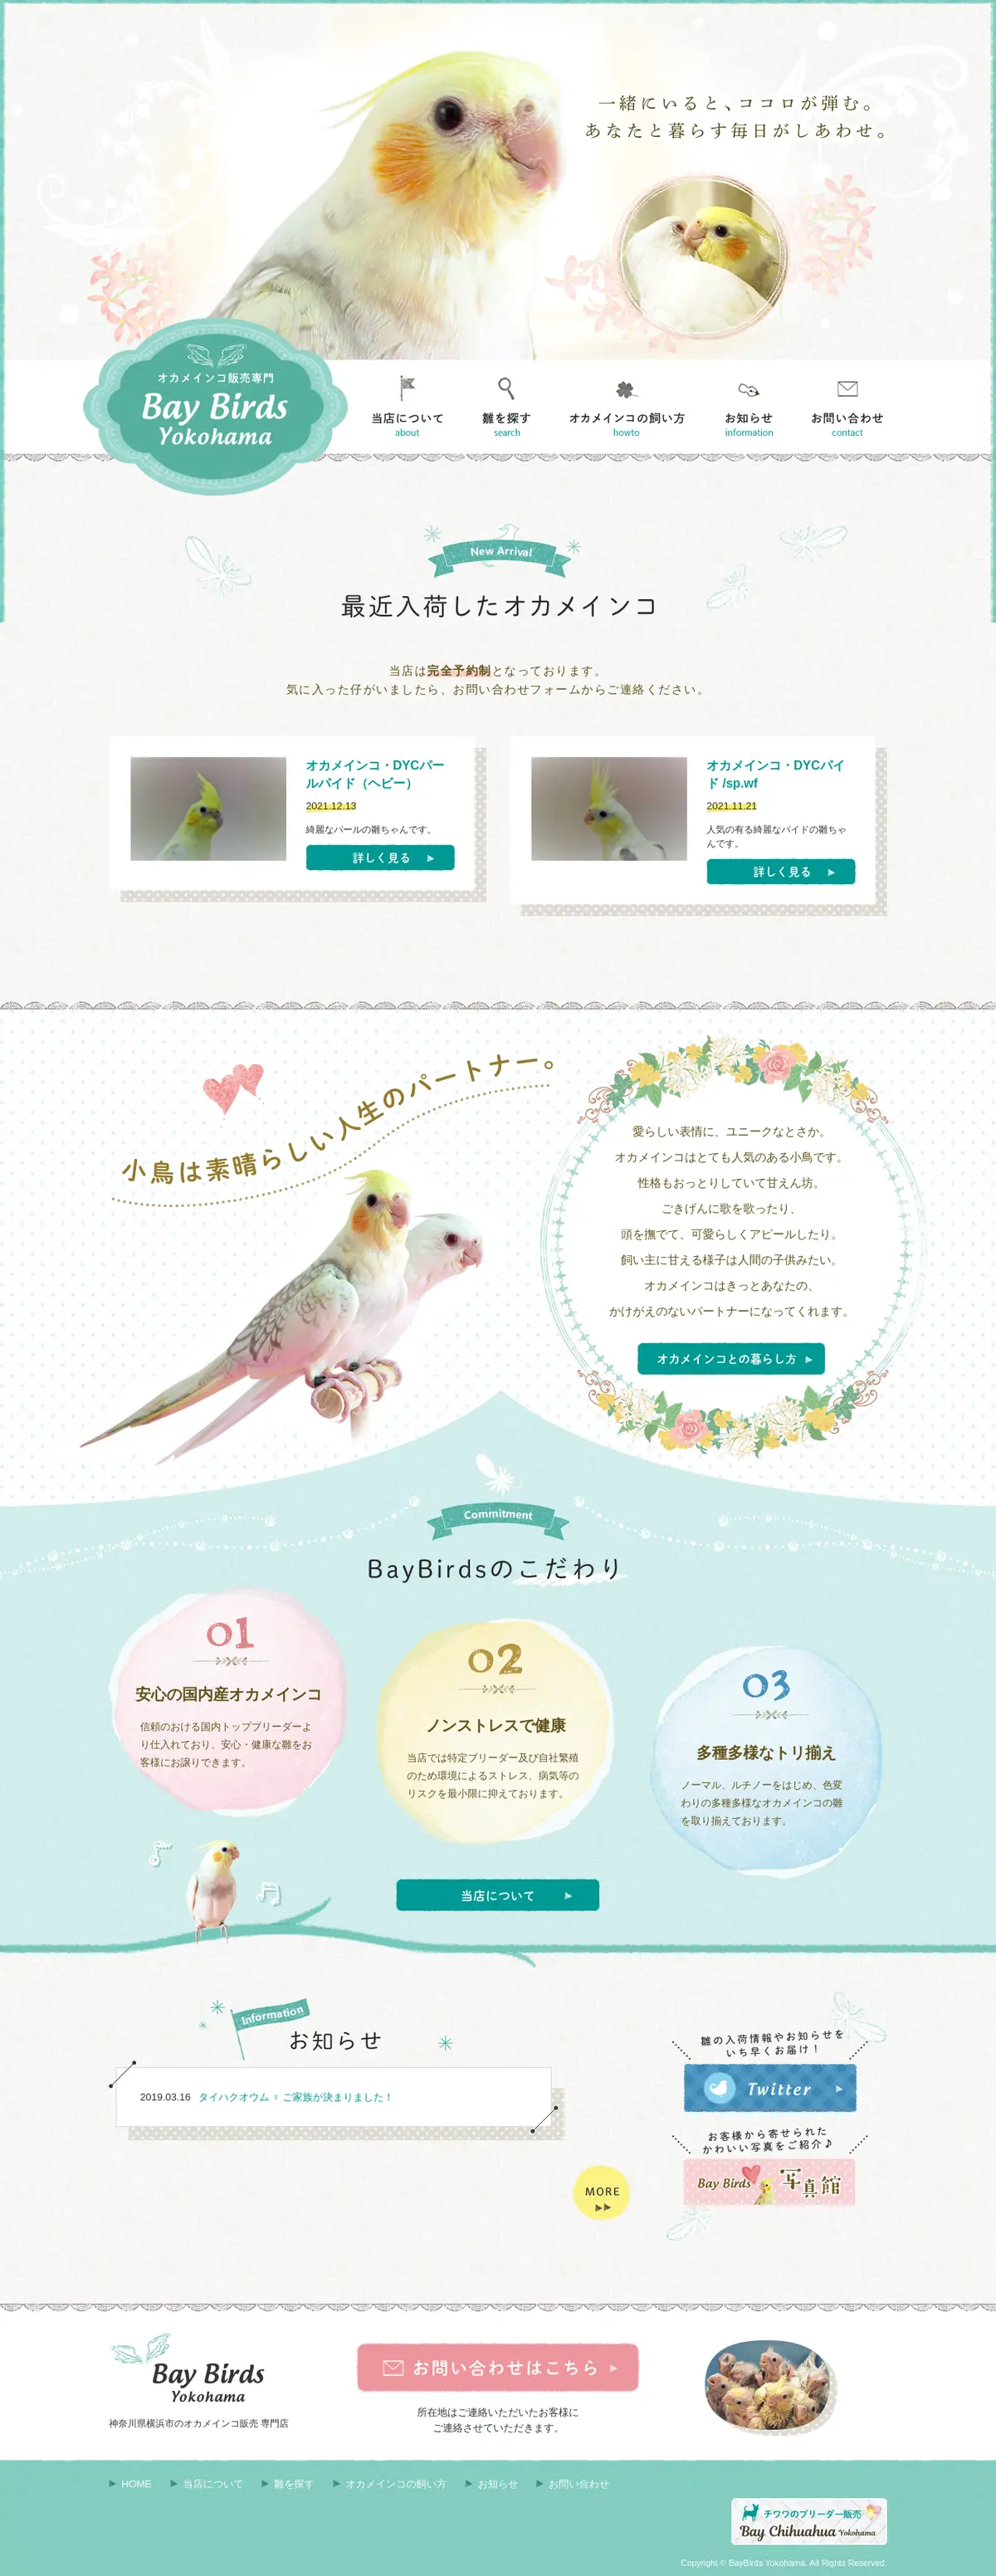 キャプチャ画面 会社名:ベイバードヨコハマプロジェクト名:Bay Birds Yokohama 画面名:全国トップ デバイス名:PCカテゴリ:動物・ペットタグ:全国トップ,PC